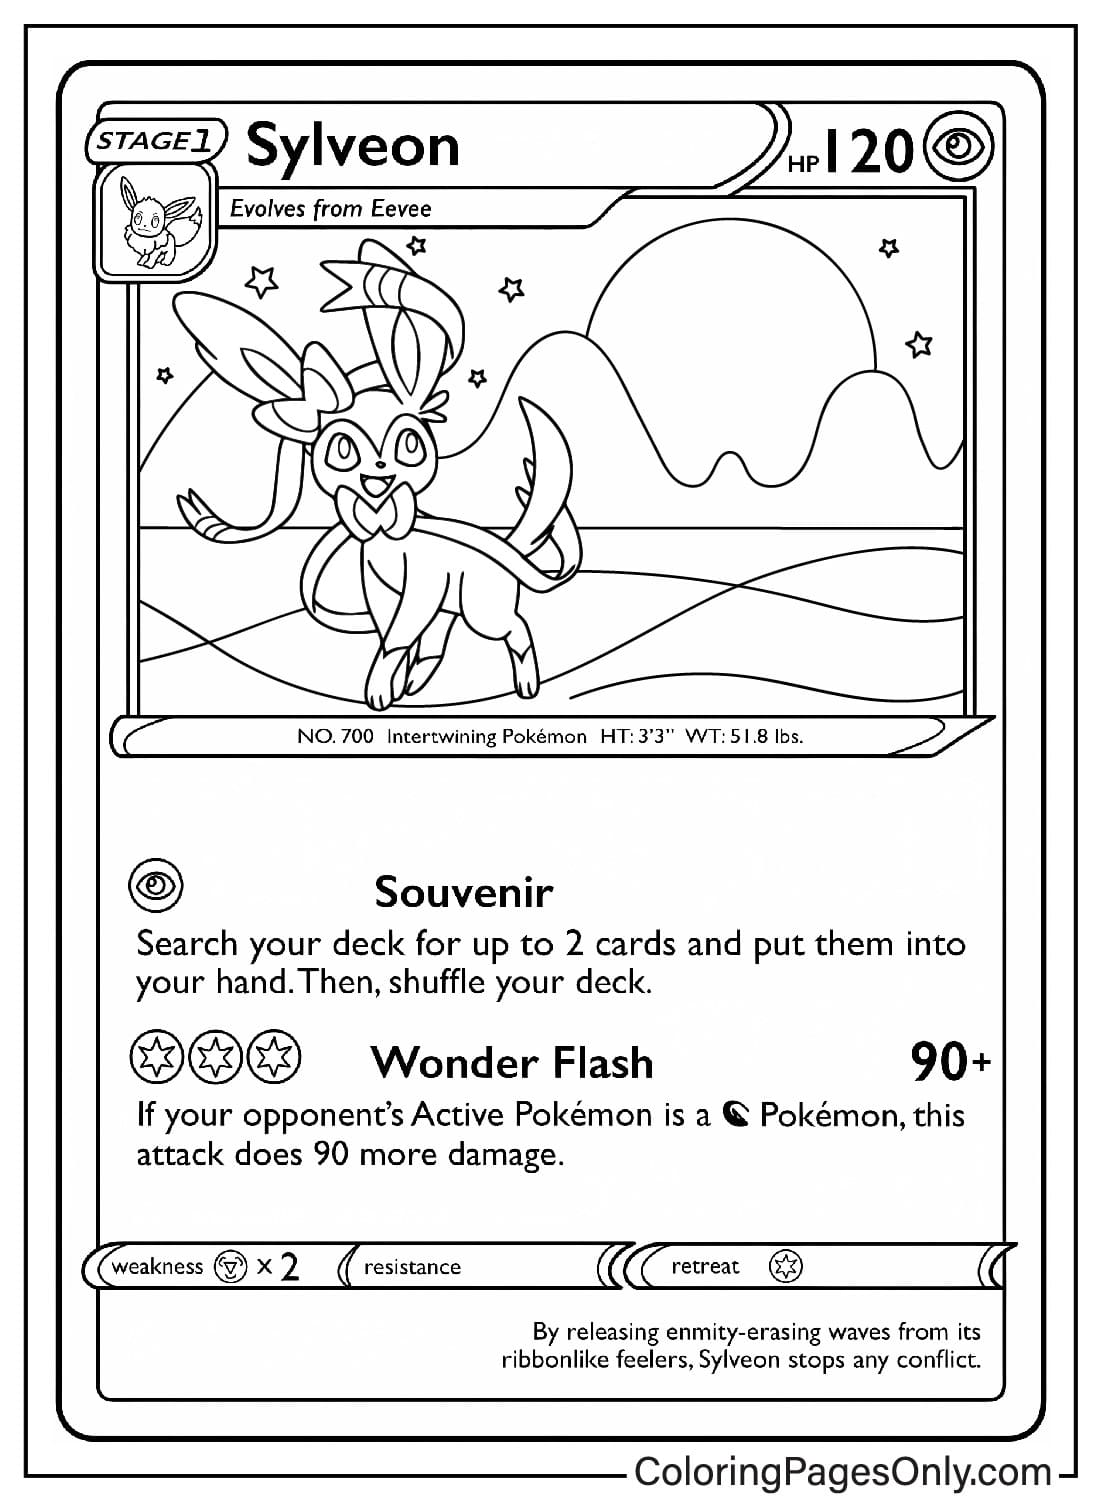 Раскраска для карточек с покемонами Сильвеон из Pokemon Card